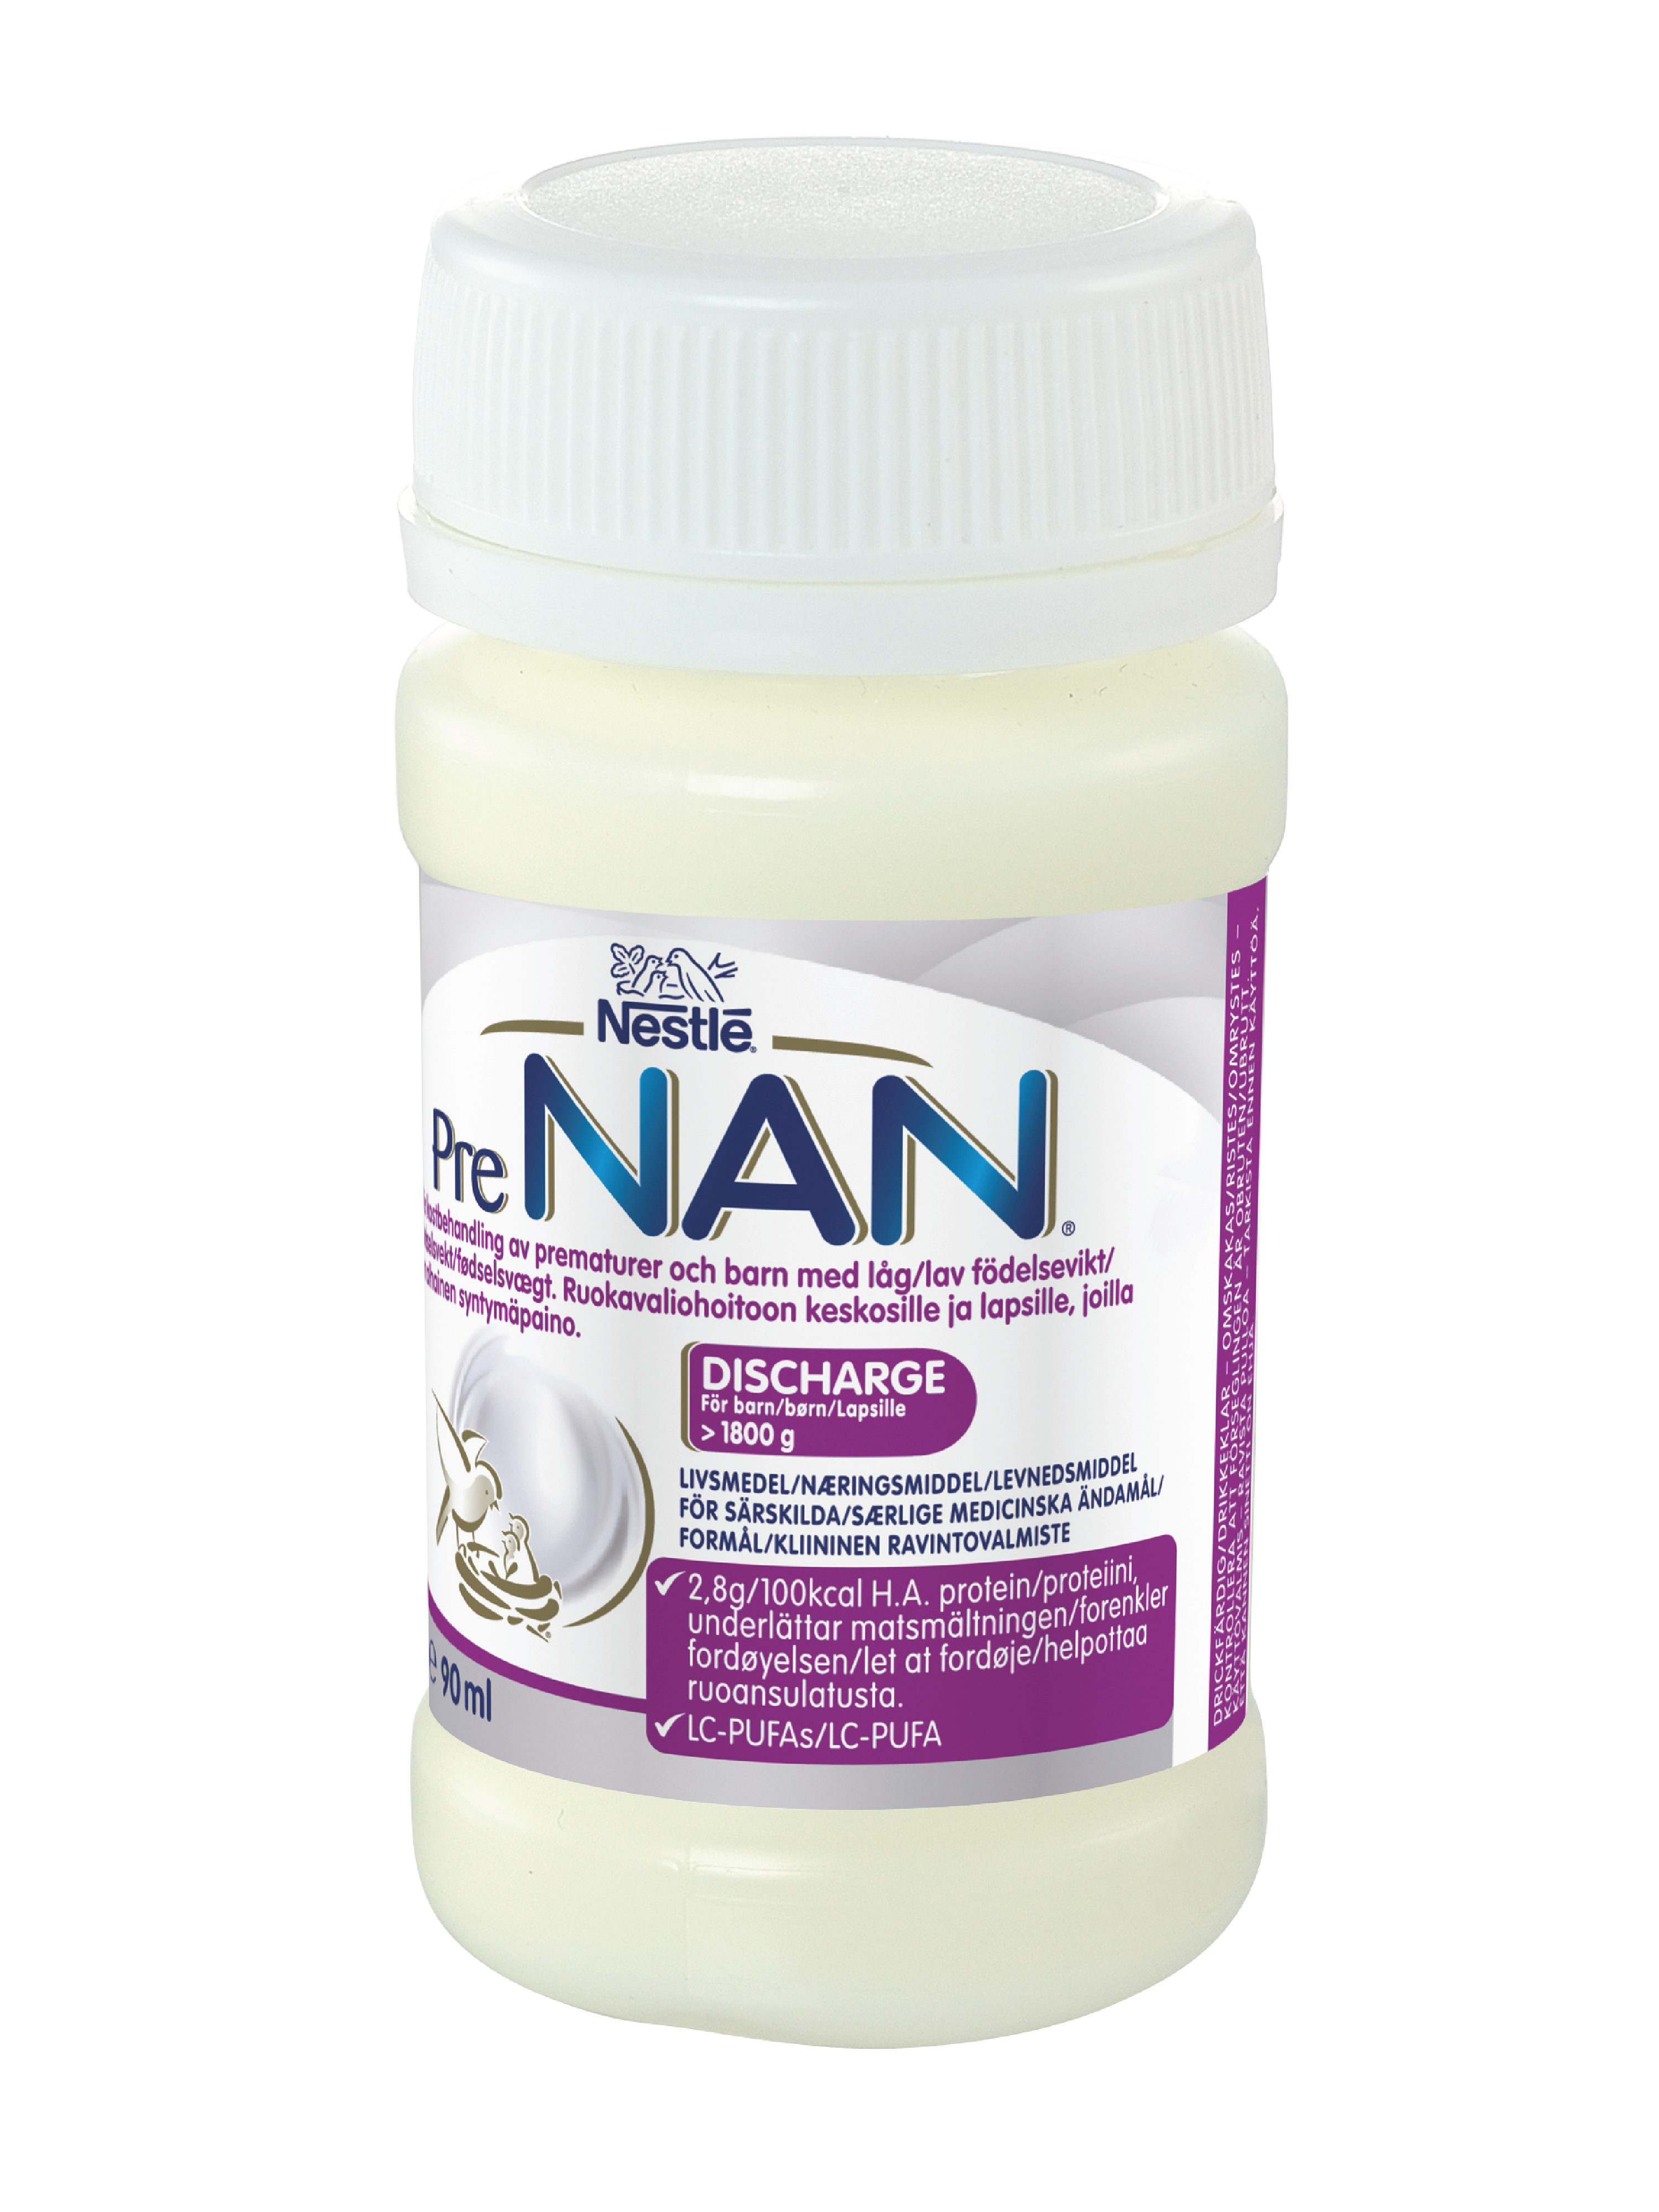 NAN Pre nan discharge, 32 x 90 ml